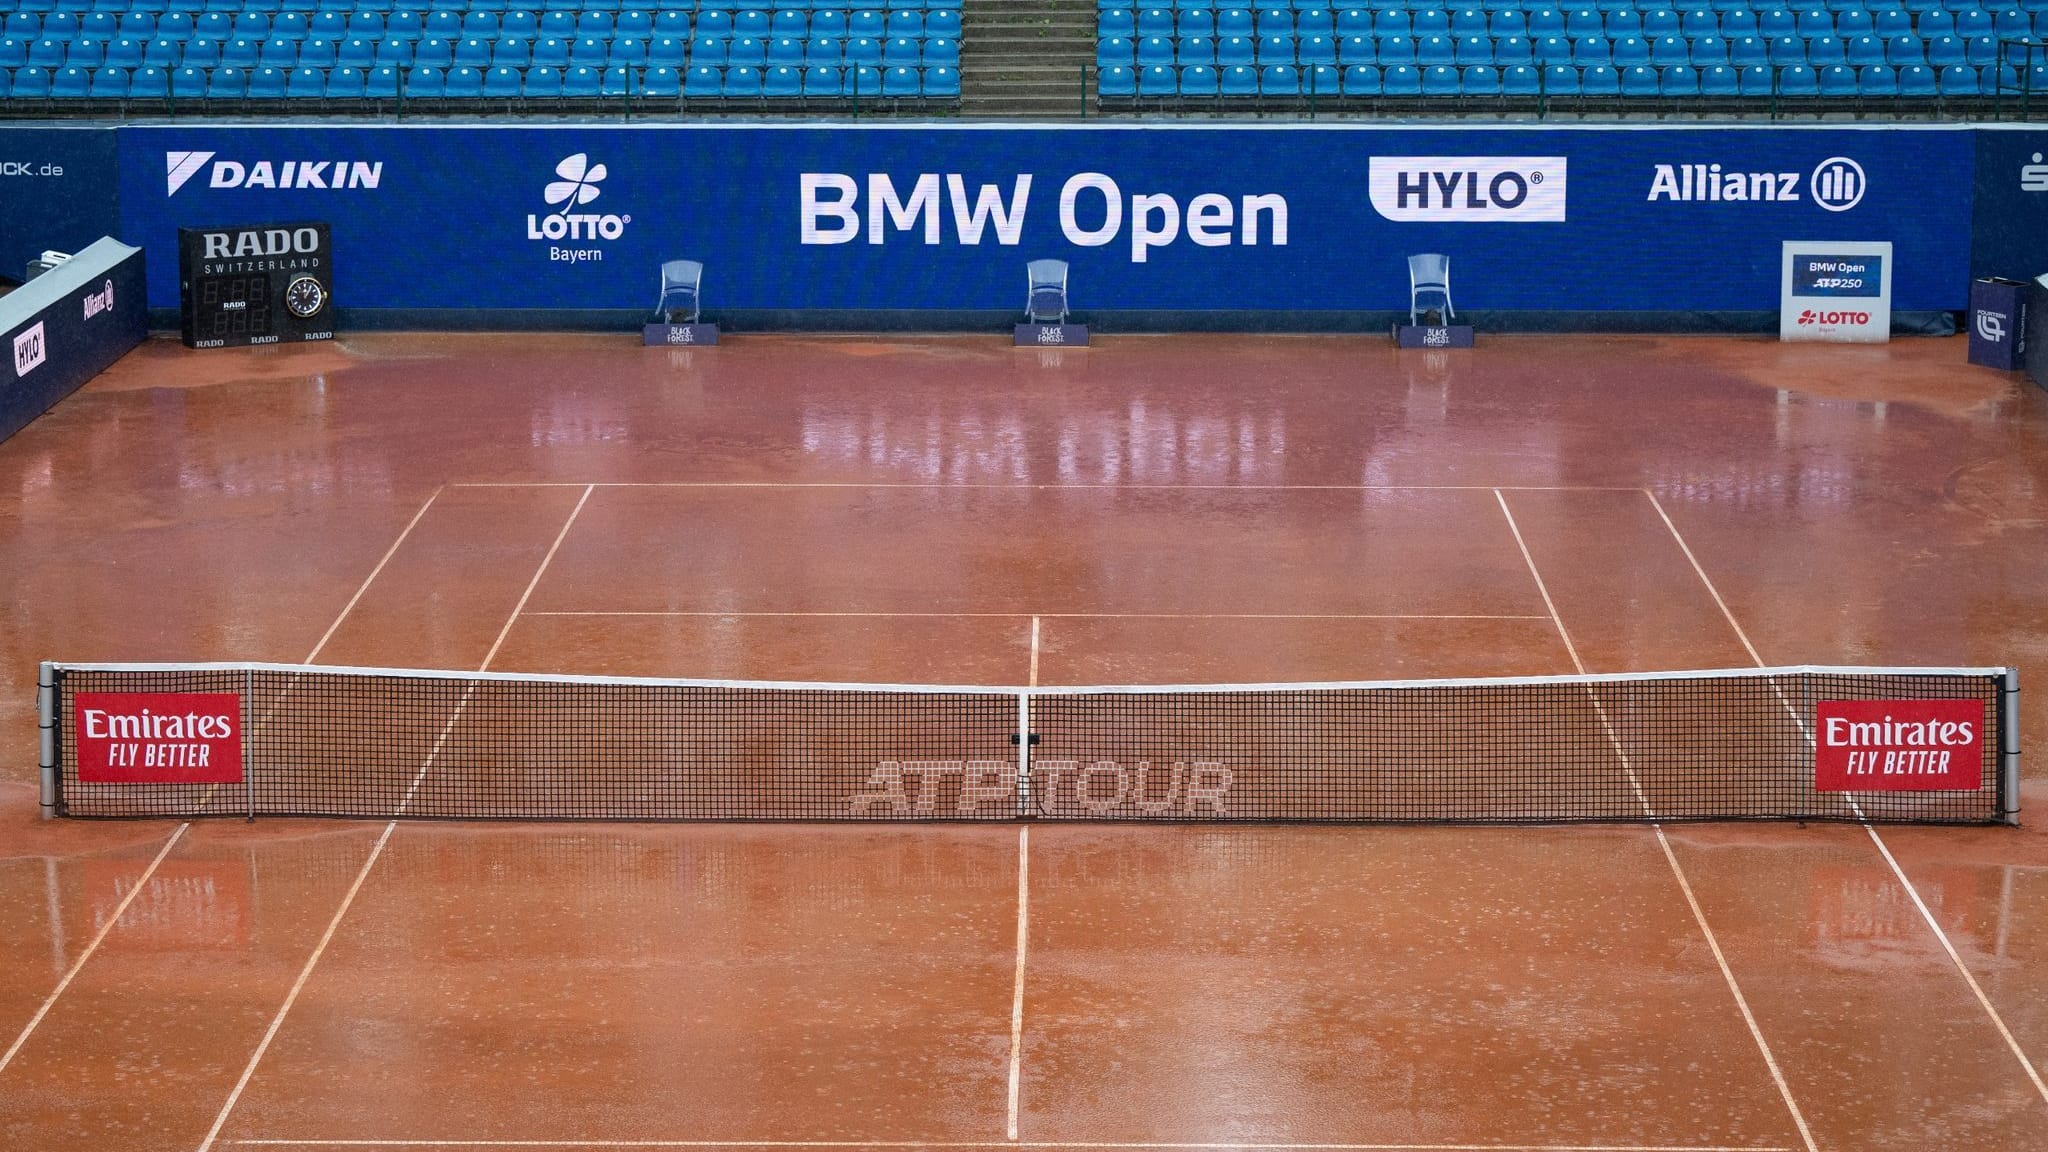 Lange Regenpause gleich zum Start des Turniers in München